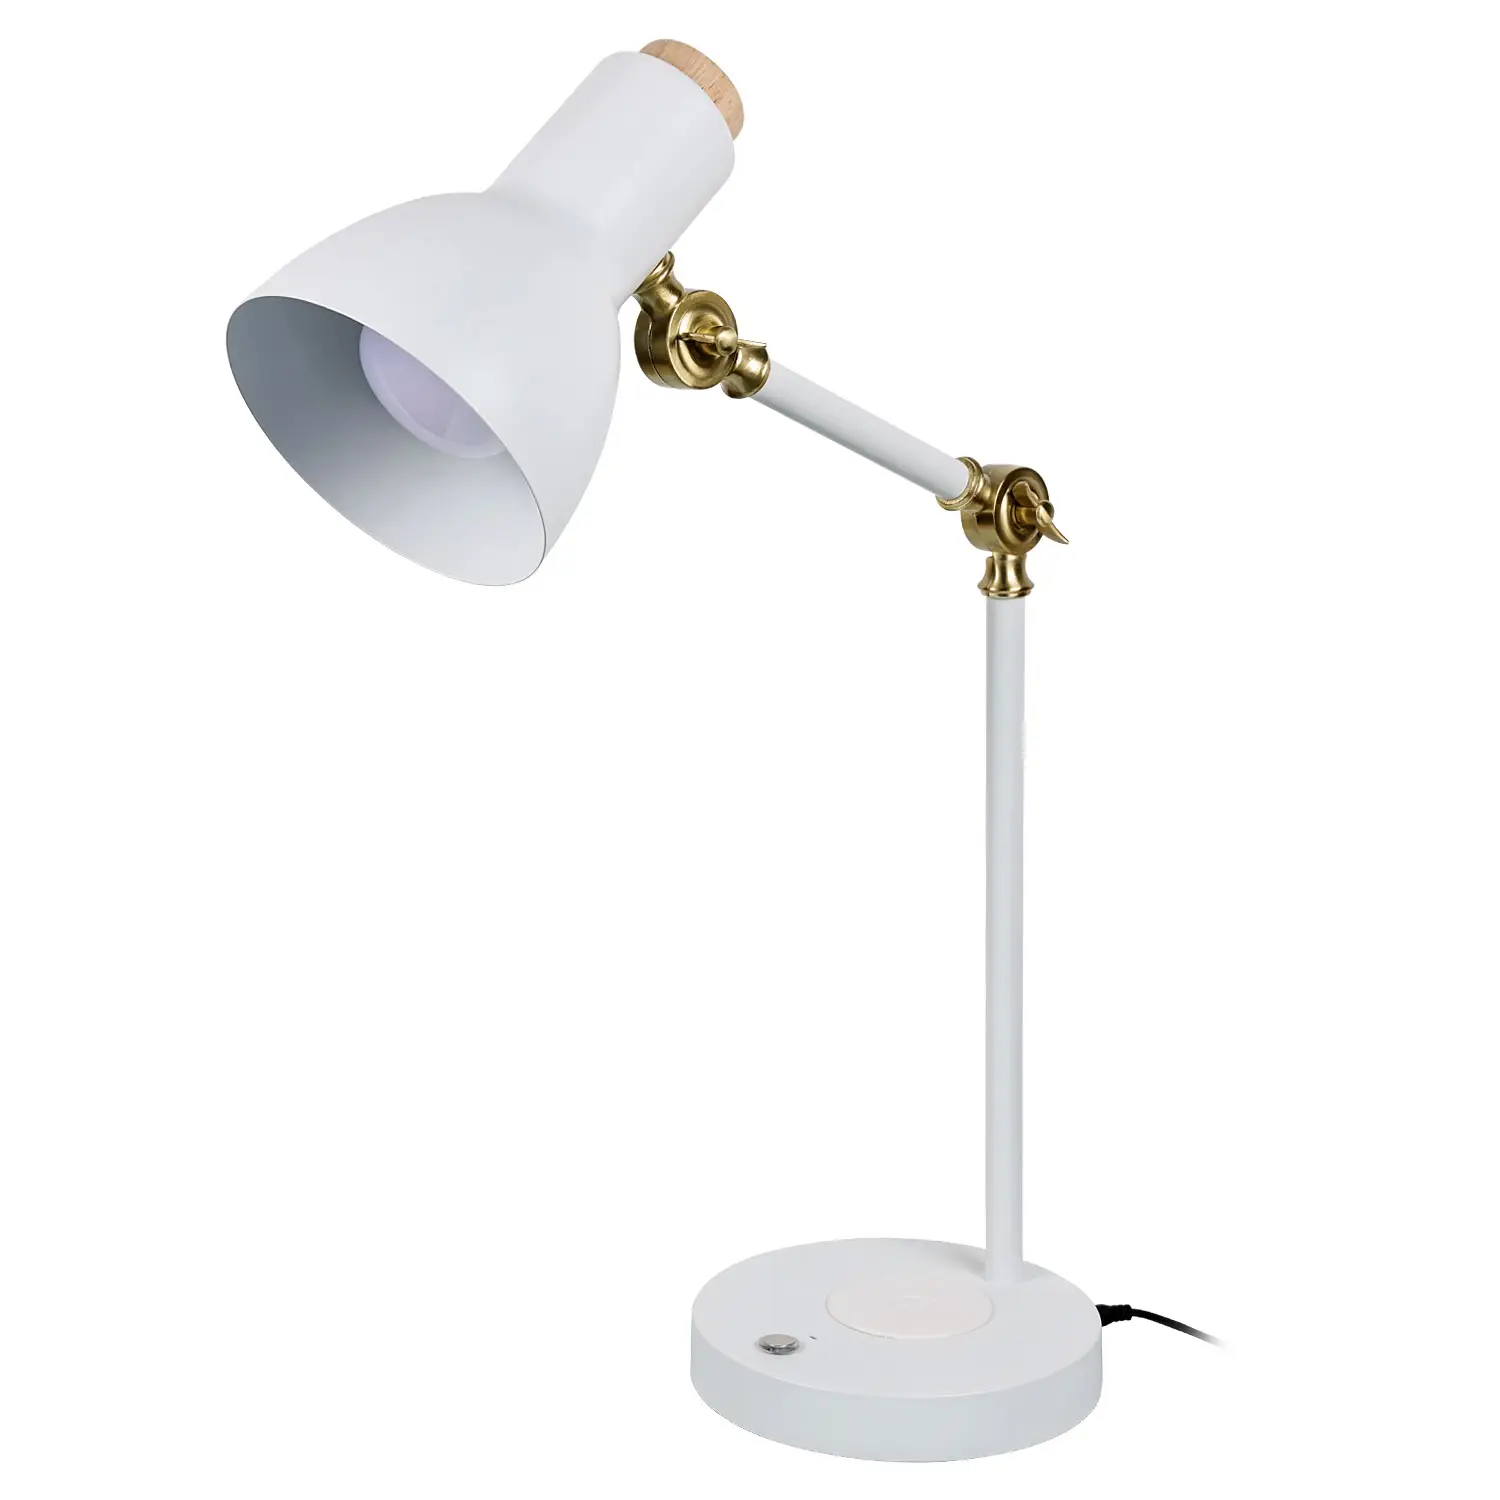 TIANHUA Lampe de bureau LED pliante sans fil pour protection des yeux lampe de table rechargeable pour chambre à coucher moderne